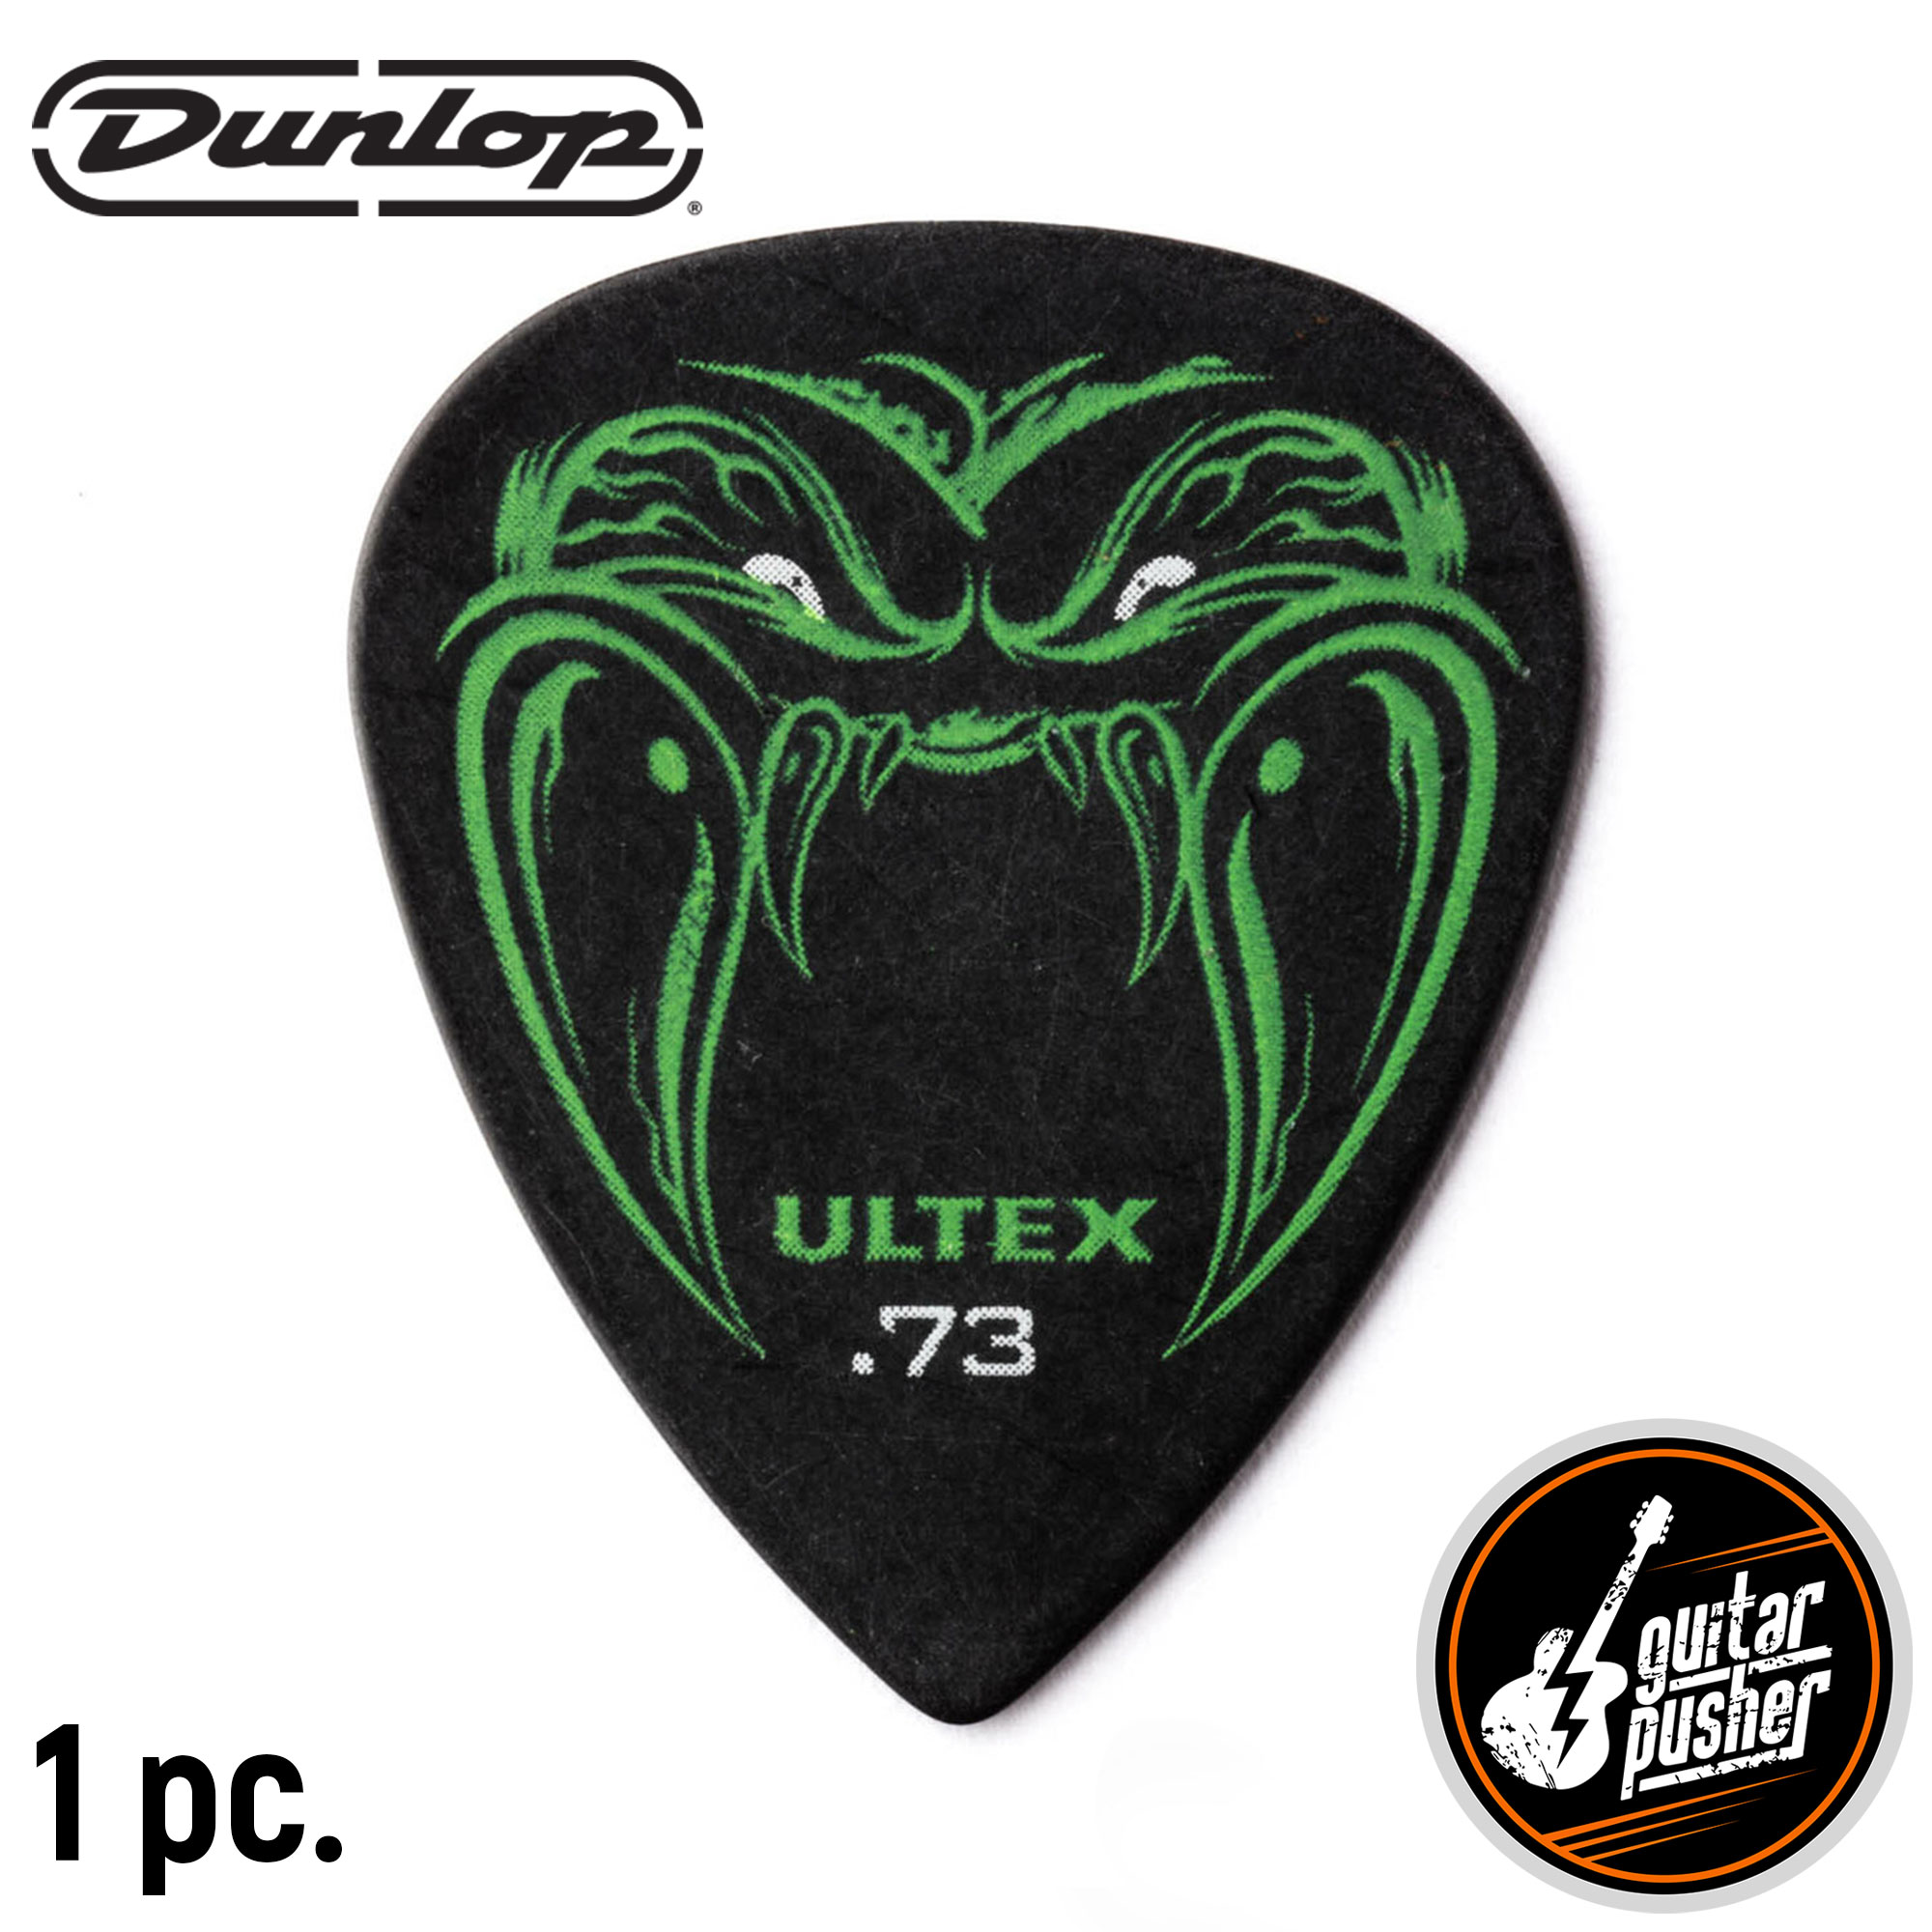 6pcs Dunlop Guitar Picks Tortex Standard 418 Mediator  0.5/0.6/0.73/0.88/1.0/1.14mm for Bass Acoustic Electric Guitar